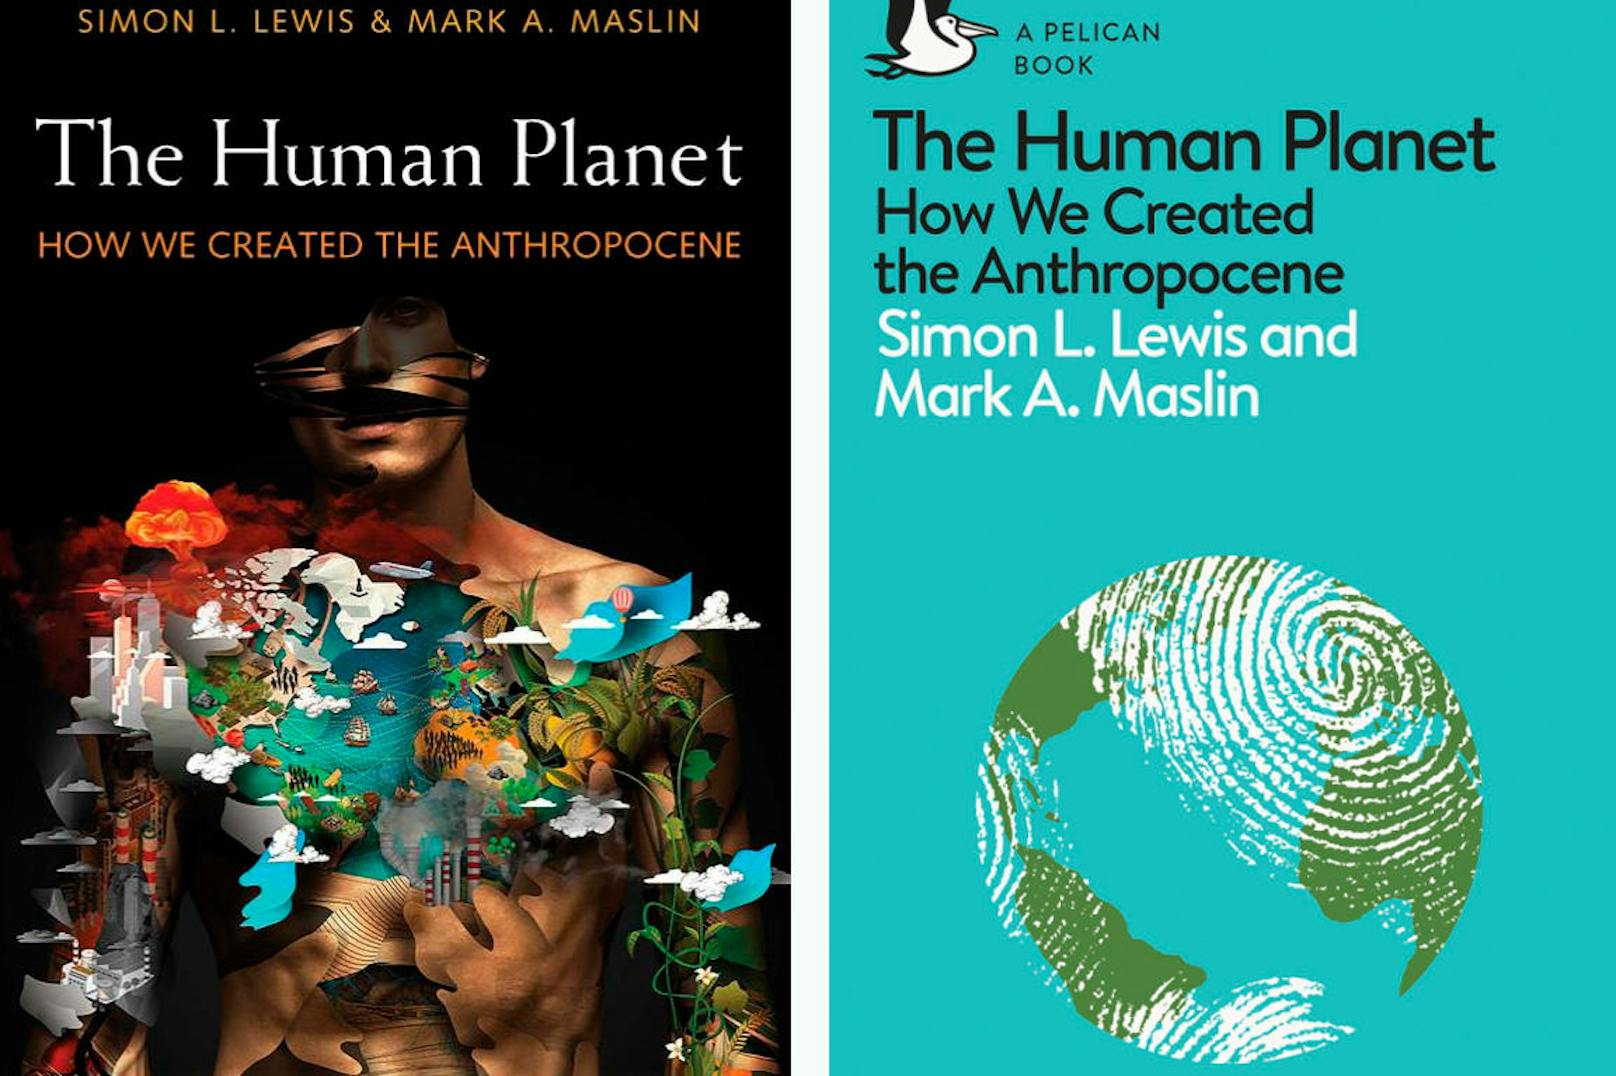 In ihrem Buch <b>"The Human Planet"</b> plädieren Simon Lewis und Mark Maslin dafür, das gegenwärtige Zeitalter "Anthropozän" (Zeitalter des Menschen) zu nennen, weil der Mensch spätestens seit der frühen Neuzeit das Gesicht des Planeten prägt.